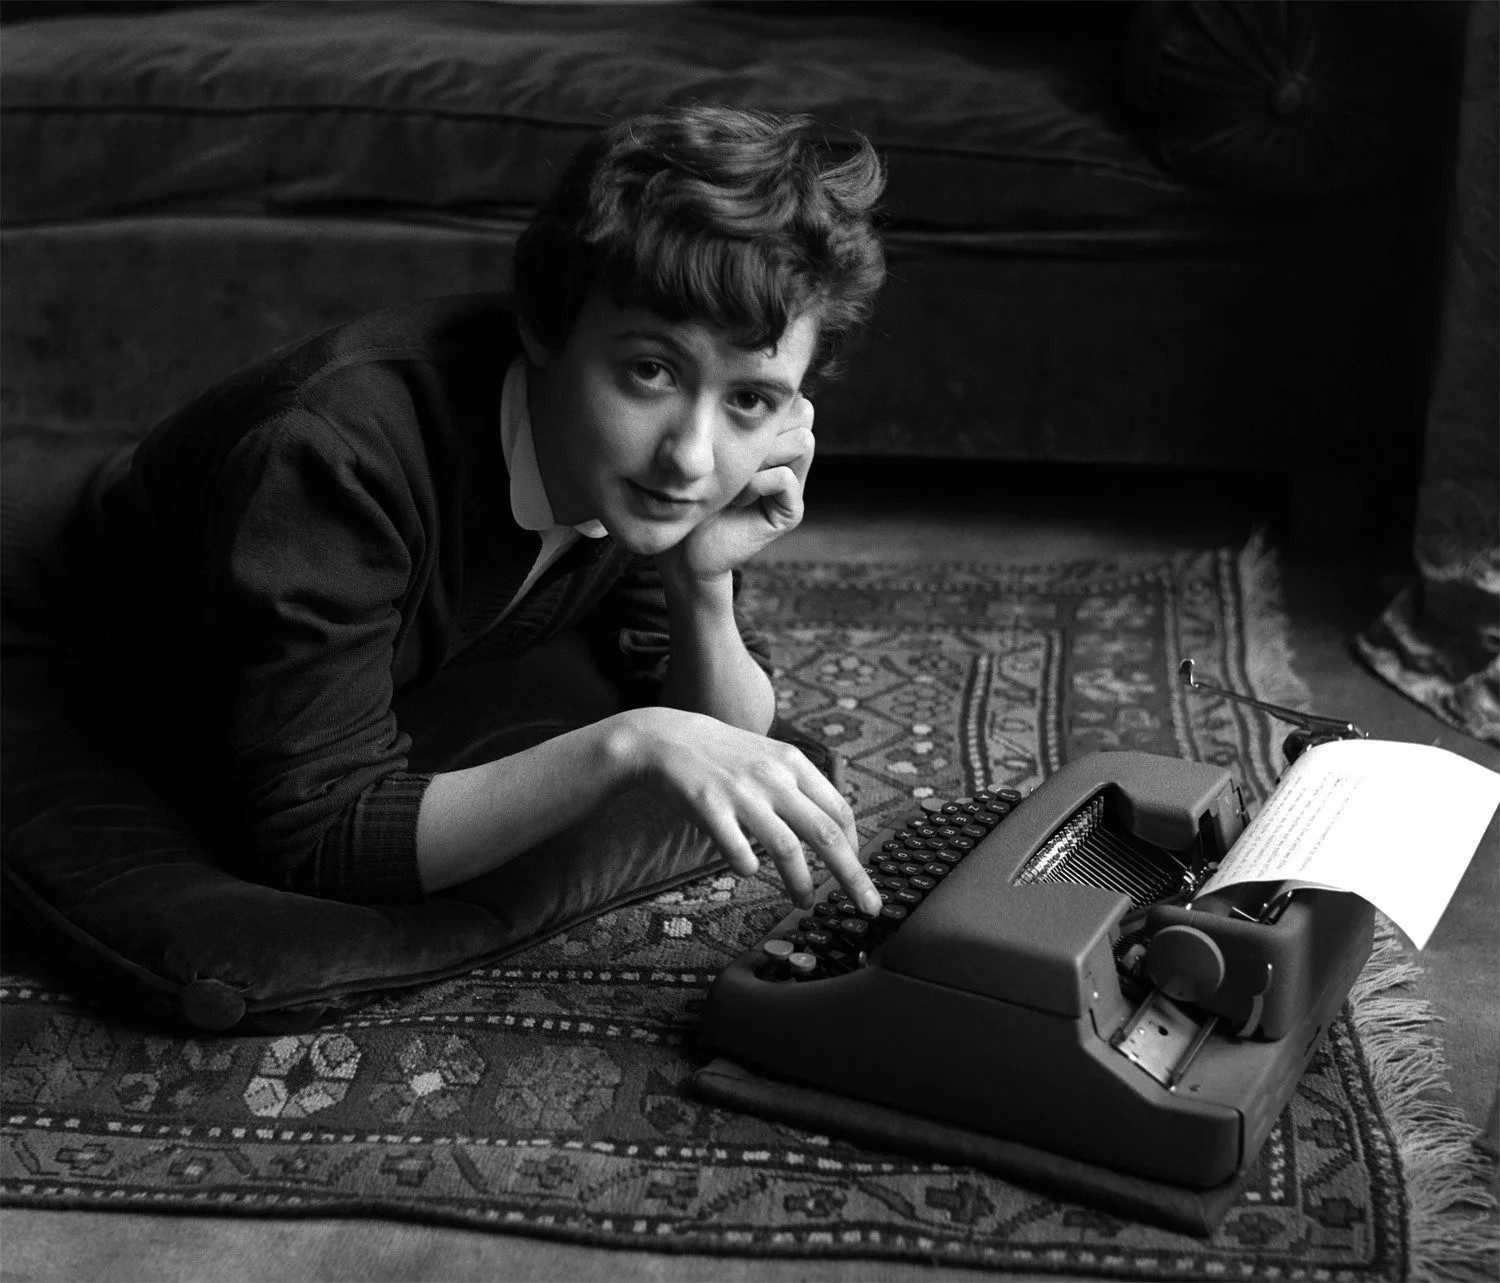 Франсуаза Саган дома, во время выхода своего первого романа, Париж, 1954. Фотограф Сабина Вайс